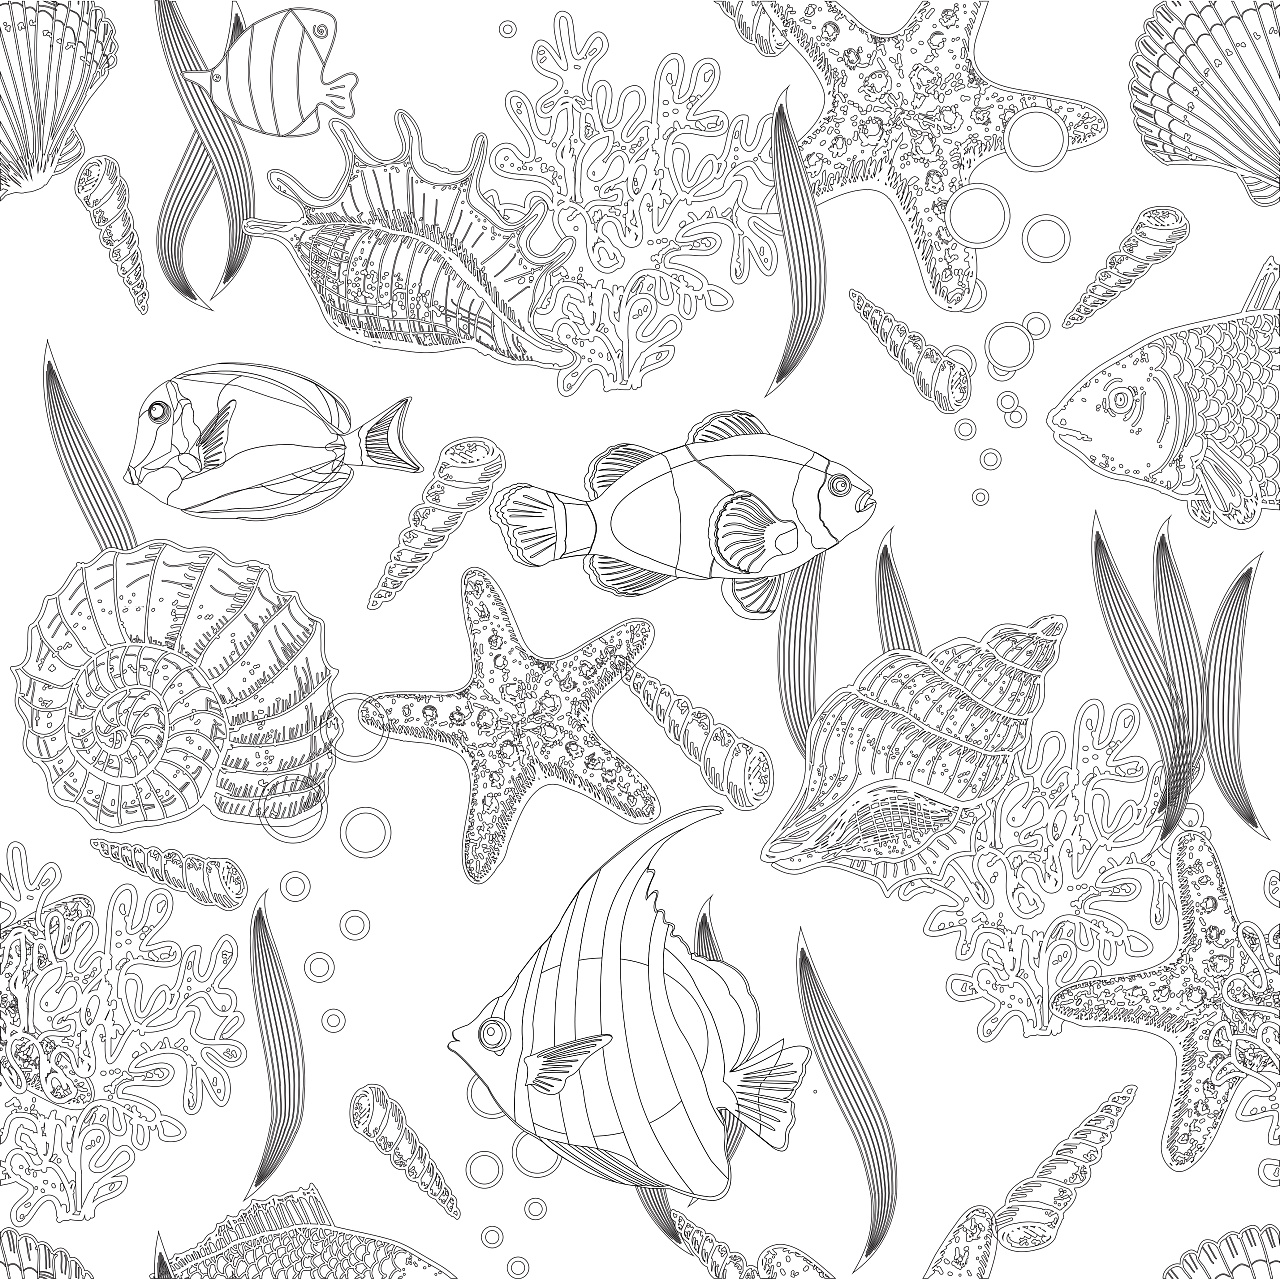 多品种海洋生物黑白手绘矢量图案花纹素材Sea Creatures hand drawn seamless pattern - 设计口袋